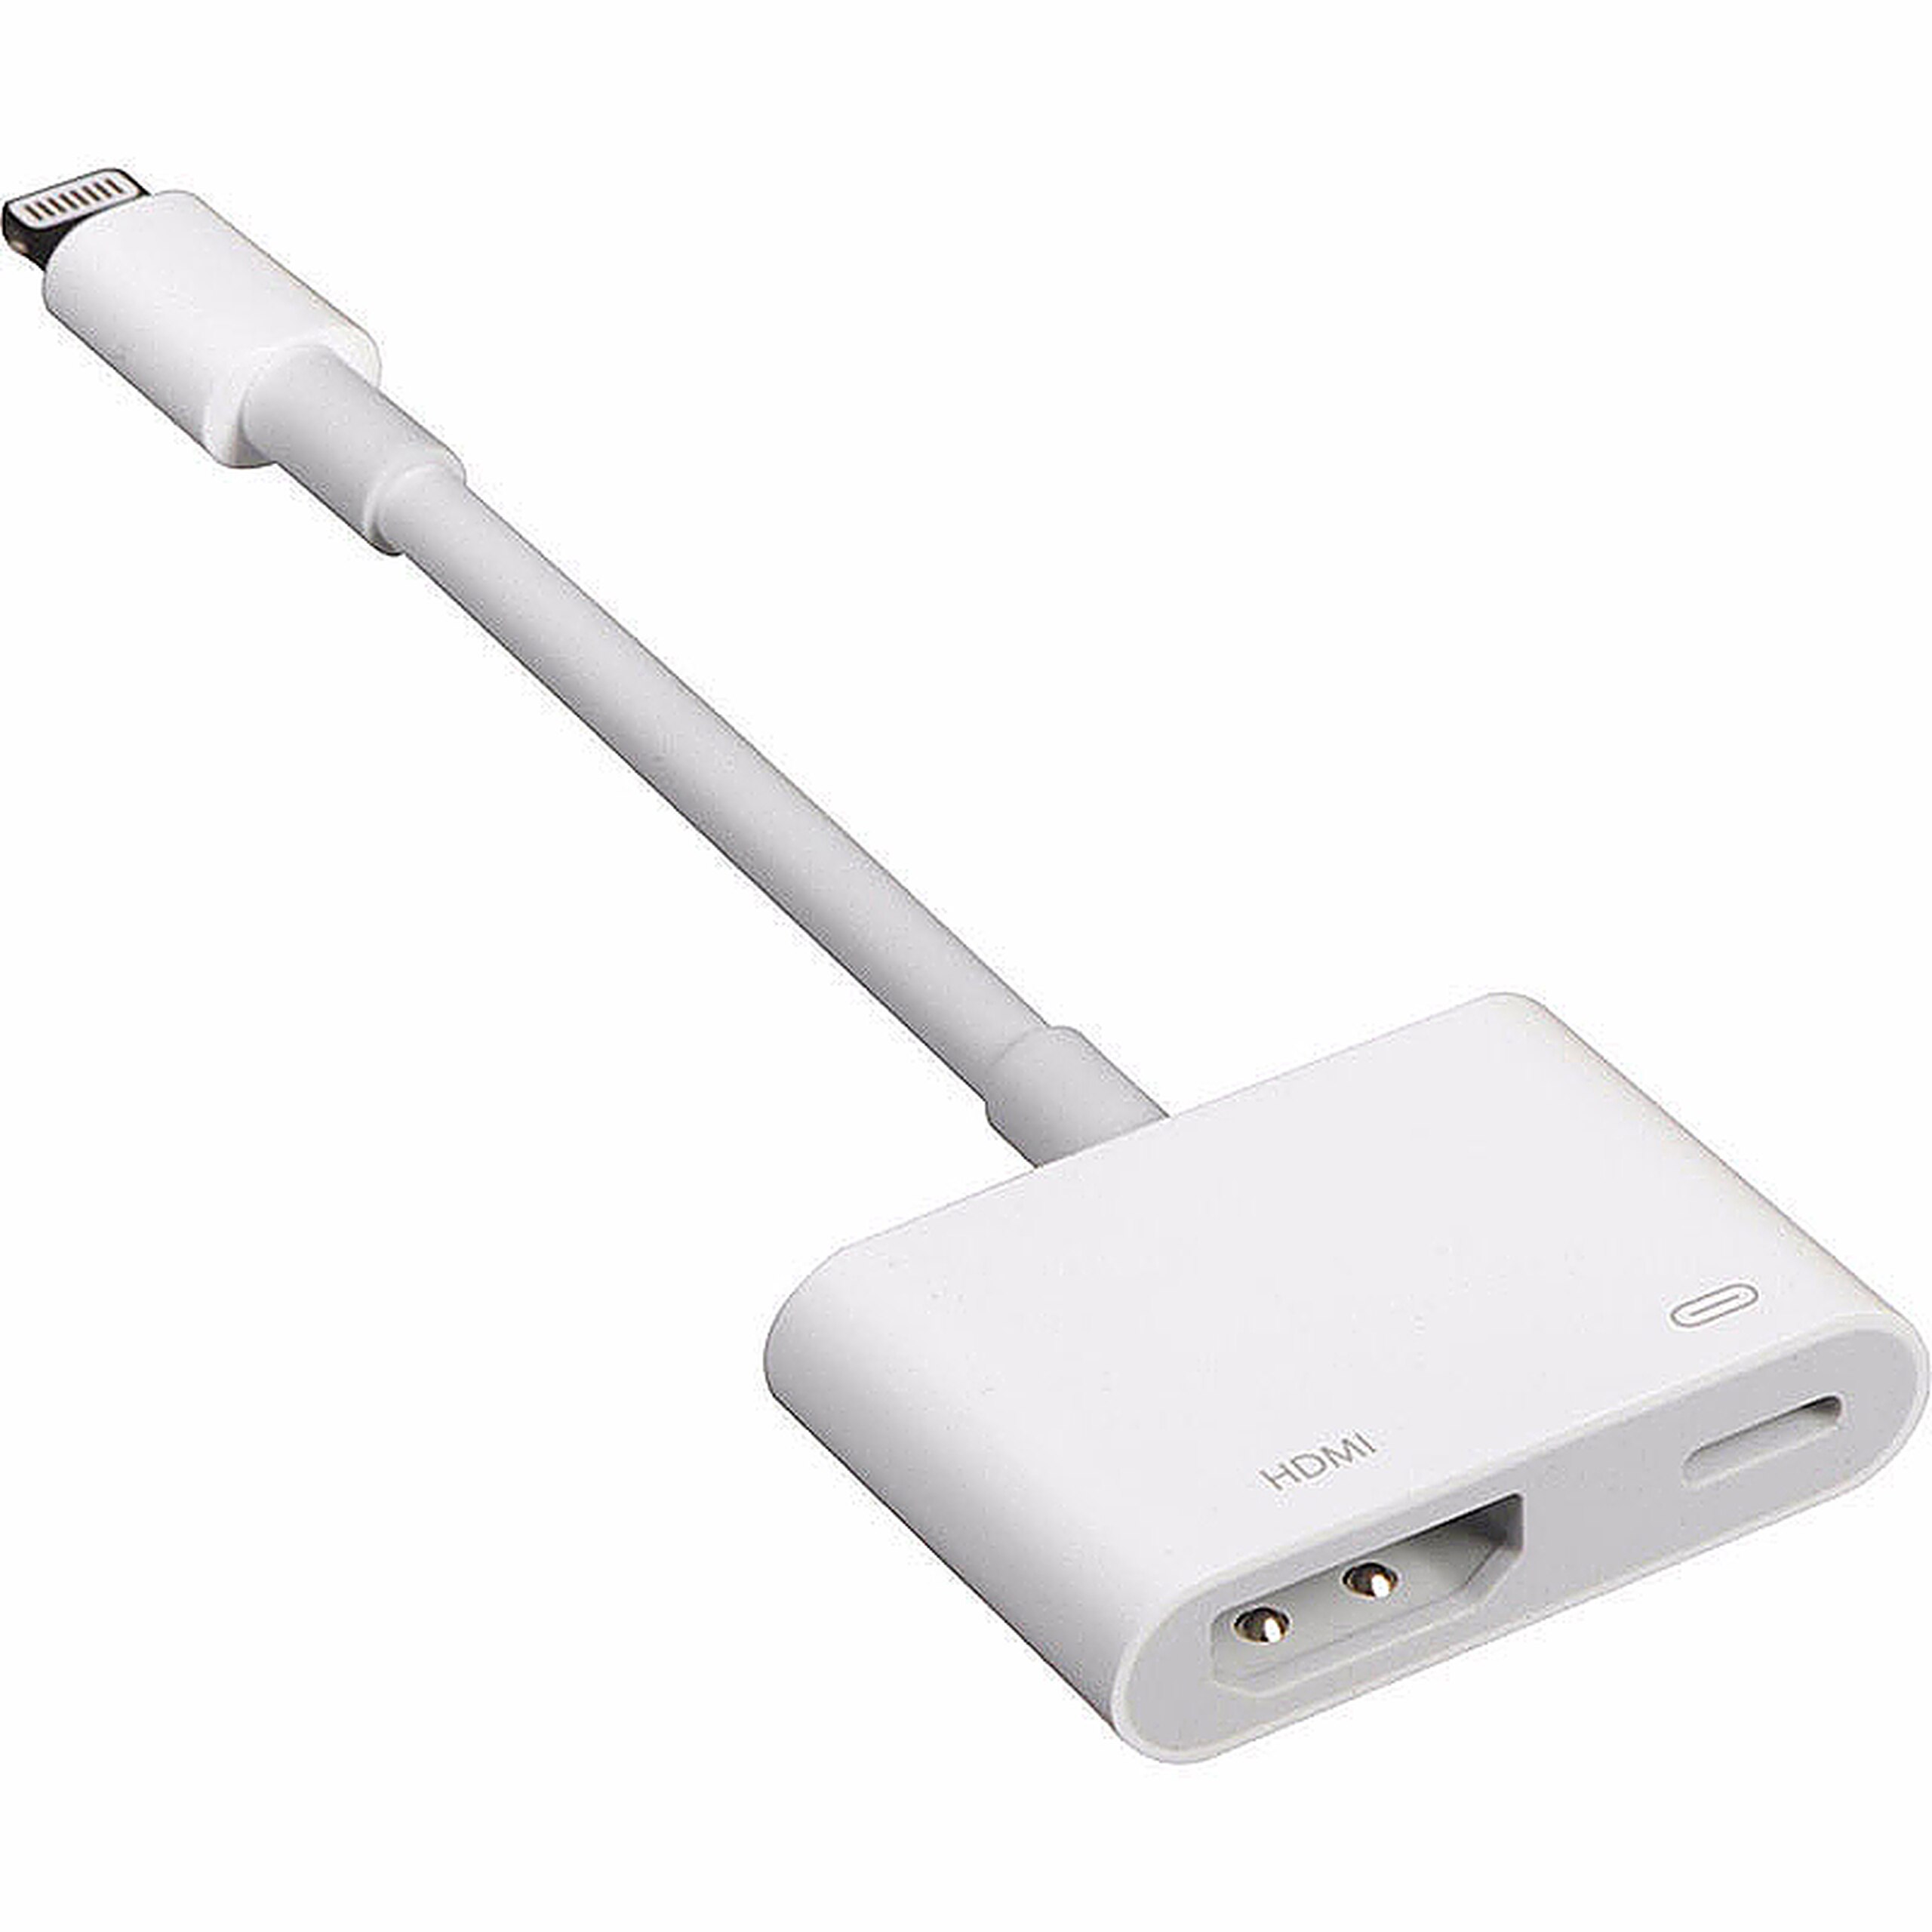 Цифровой av. Адаптер Apple md826zm/a. Переходник HDMI Lightning iphone. Переходник для IPOD, iphone, IPAD Apple Lightning Digital av Adapter (md826zm/a). Переходник Lightning HDMI для Apple.